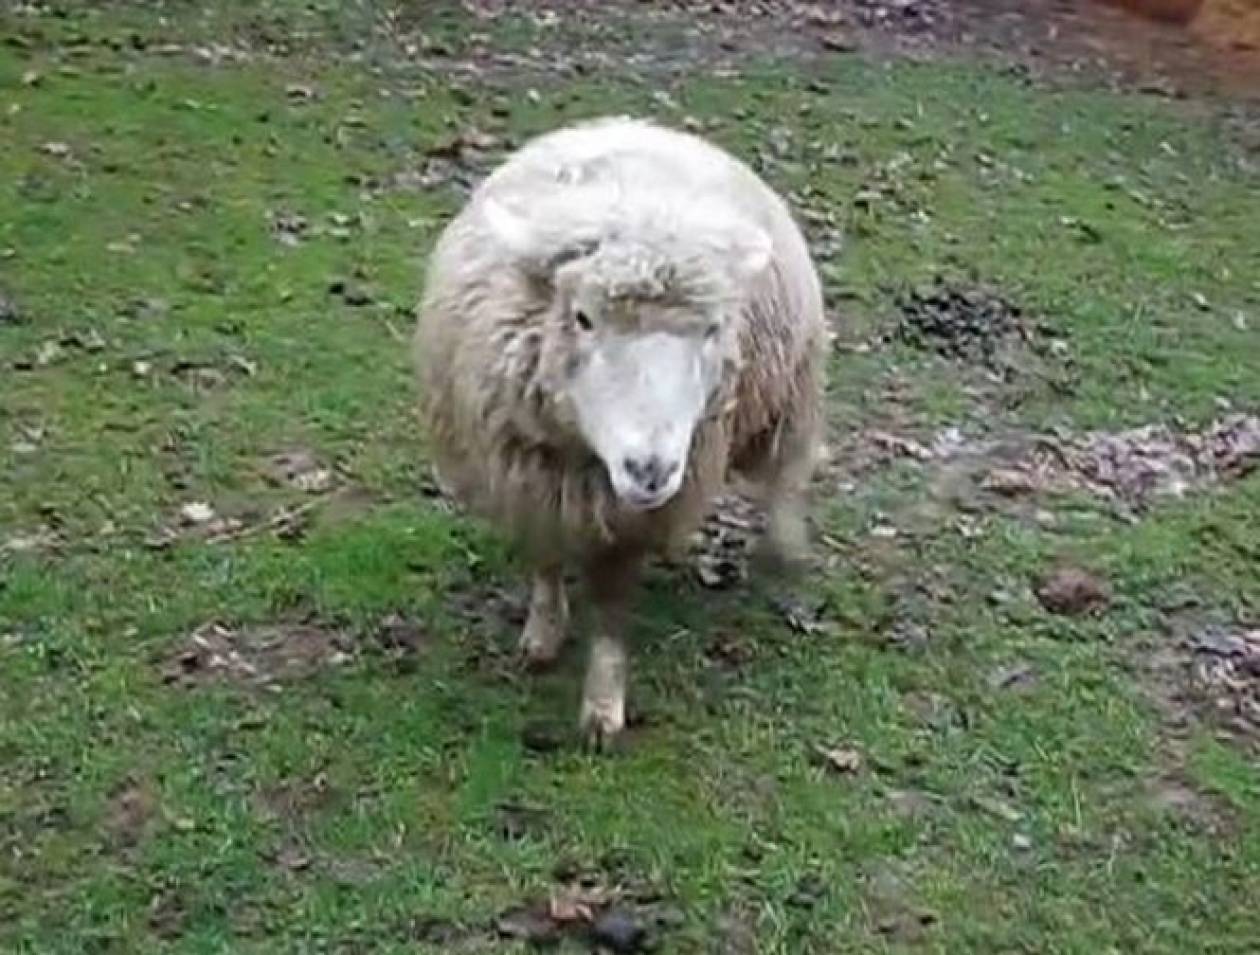 Φάρσαλα: Έσερνε το πρόβατο με το αυτοκίνητό του